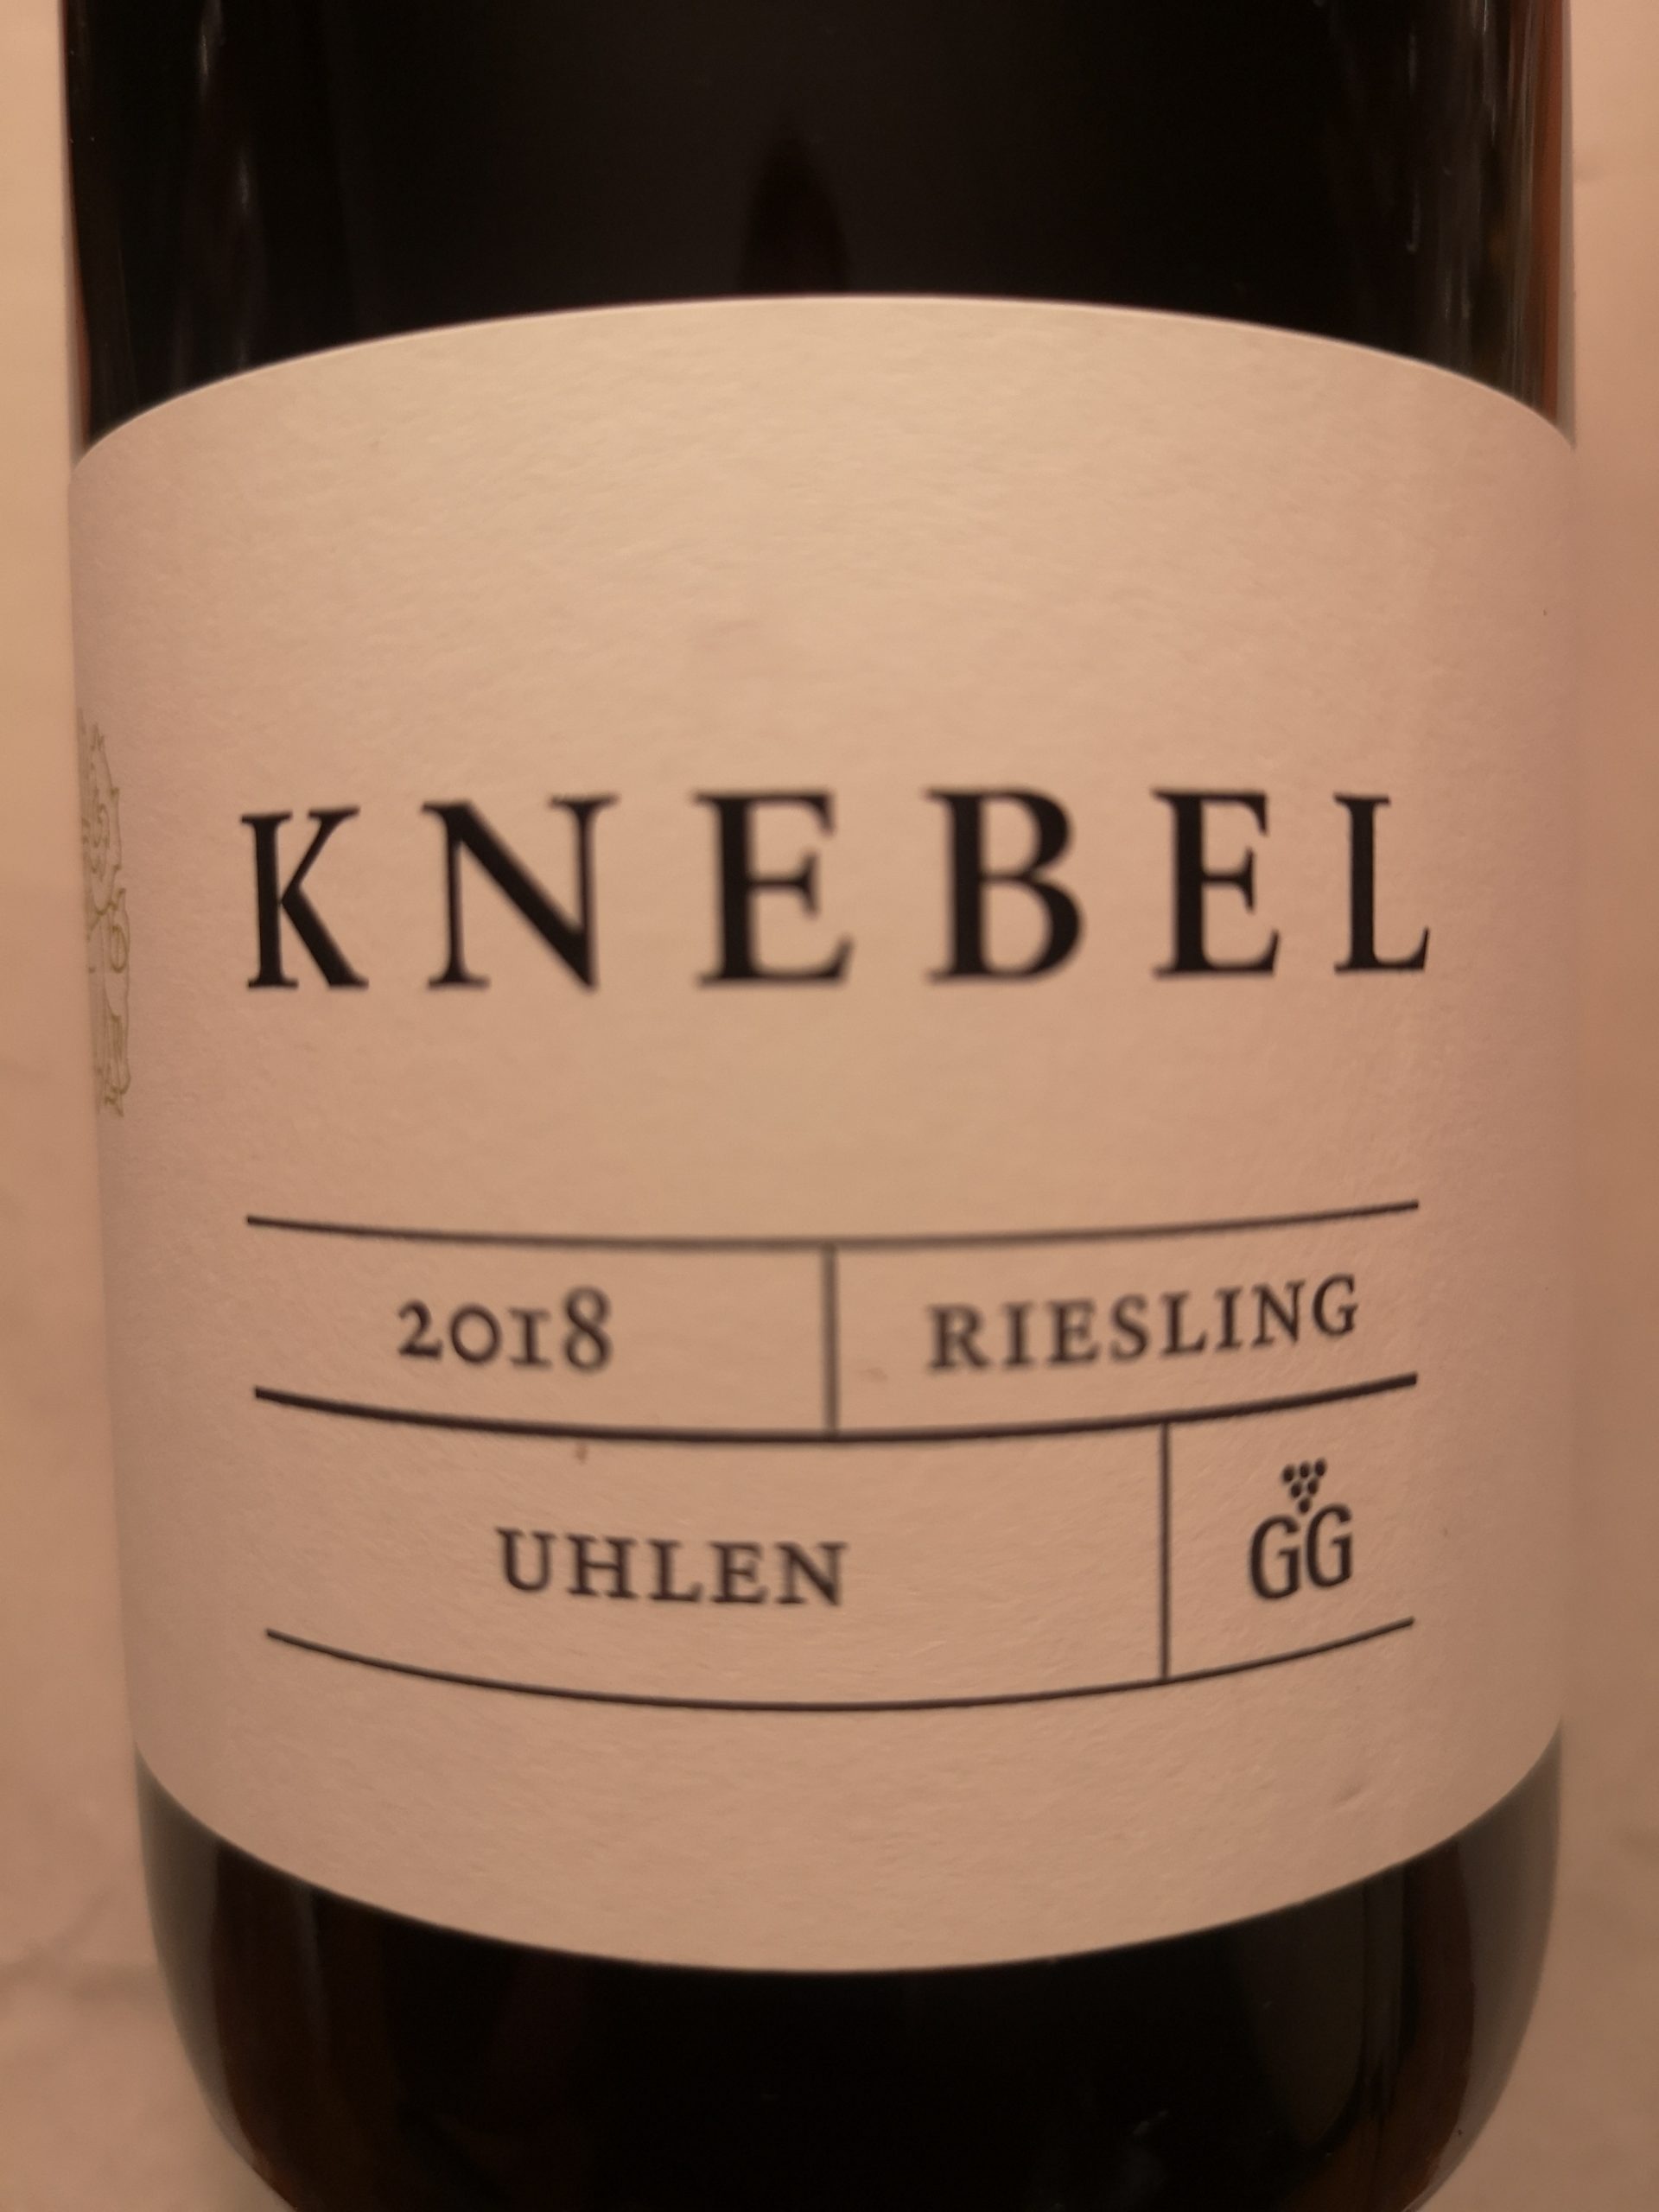 2018 Riesling Uhlen GG | Knebel